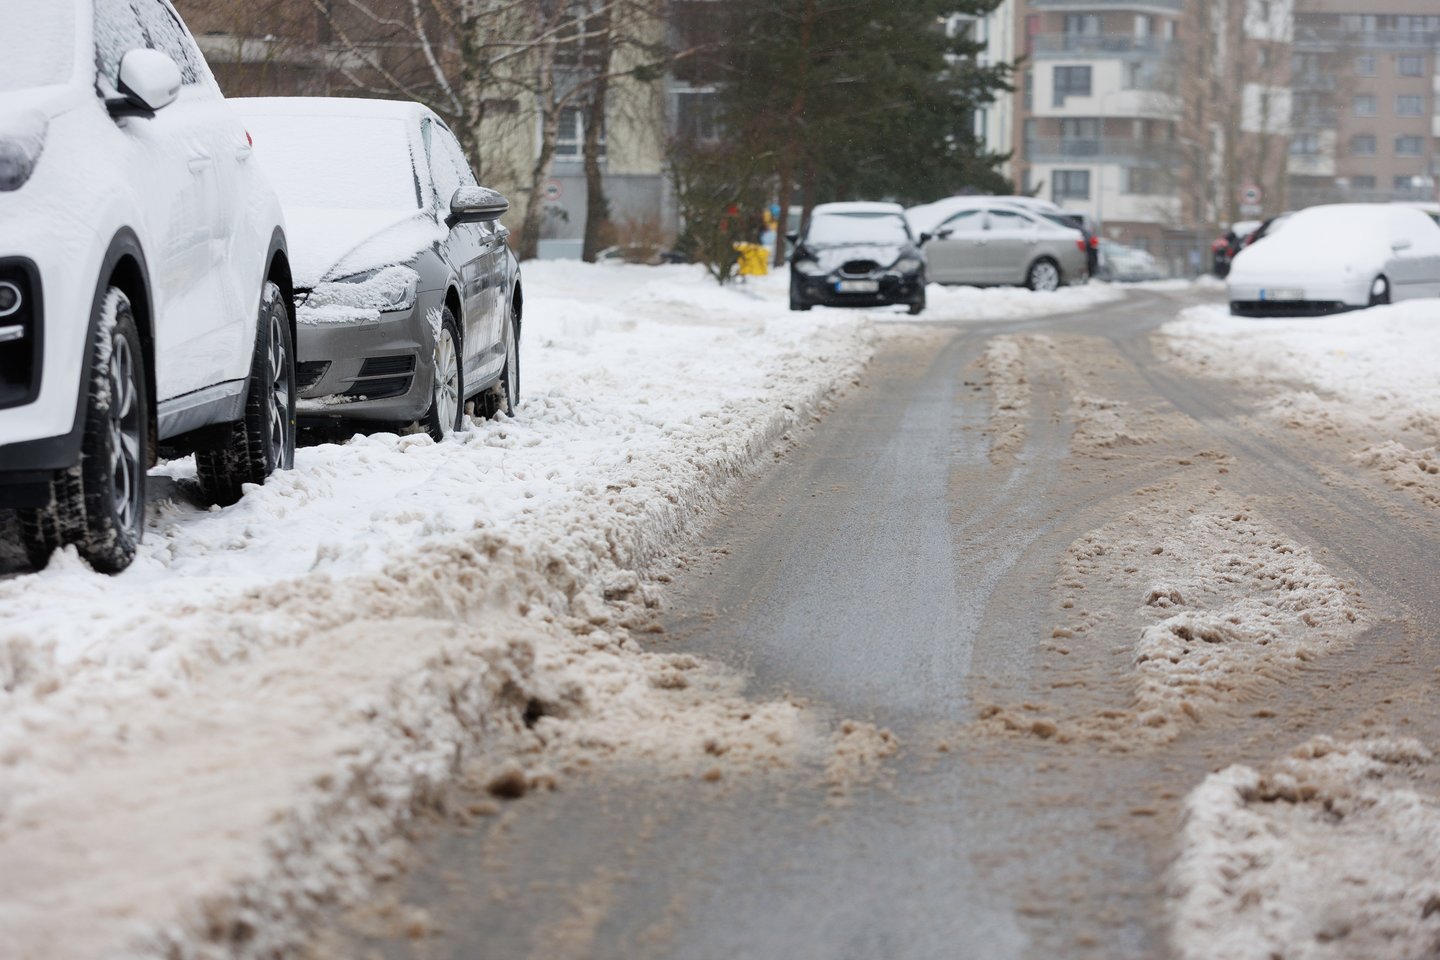 Vilniaus savivaldybės atstovai pažymėjo, kad žiemos darbai nėra vien tik sniego valymas, pėsčiųjų takų ar važiuojamosios kelio dalies barstymas.<br>T.Bauro nuotr.